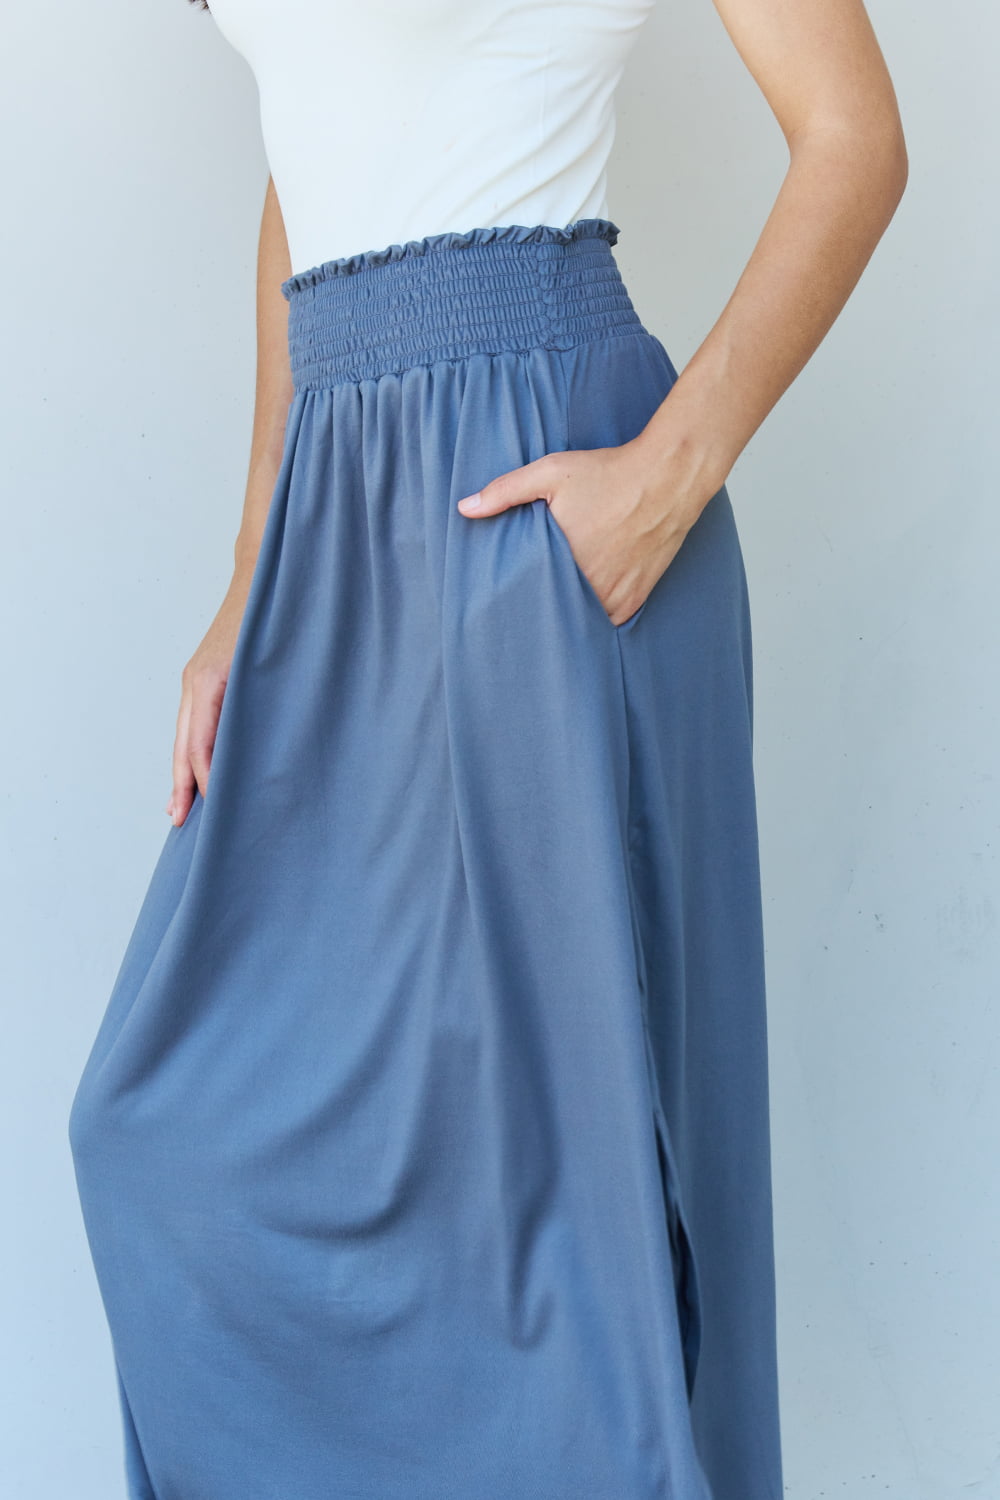 Doublju Comfort Princess Full Size High Waist Scoop Hem Maxi Skirt in Dusty Blue - Tigbul's Fashion